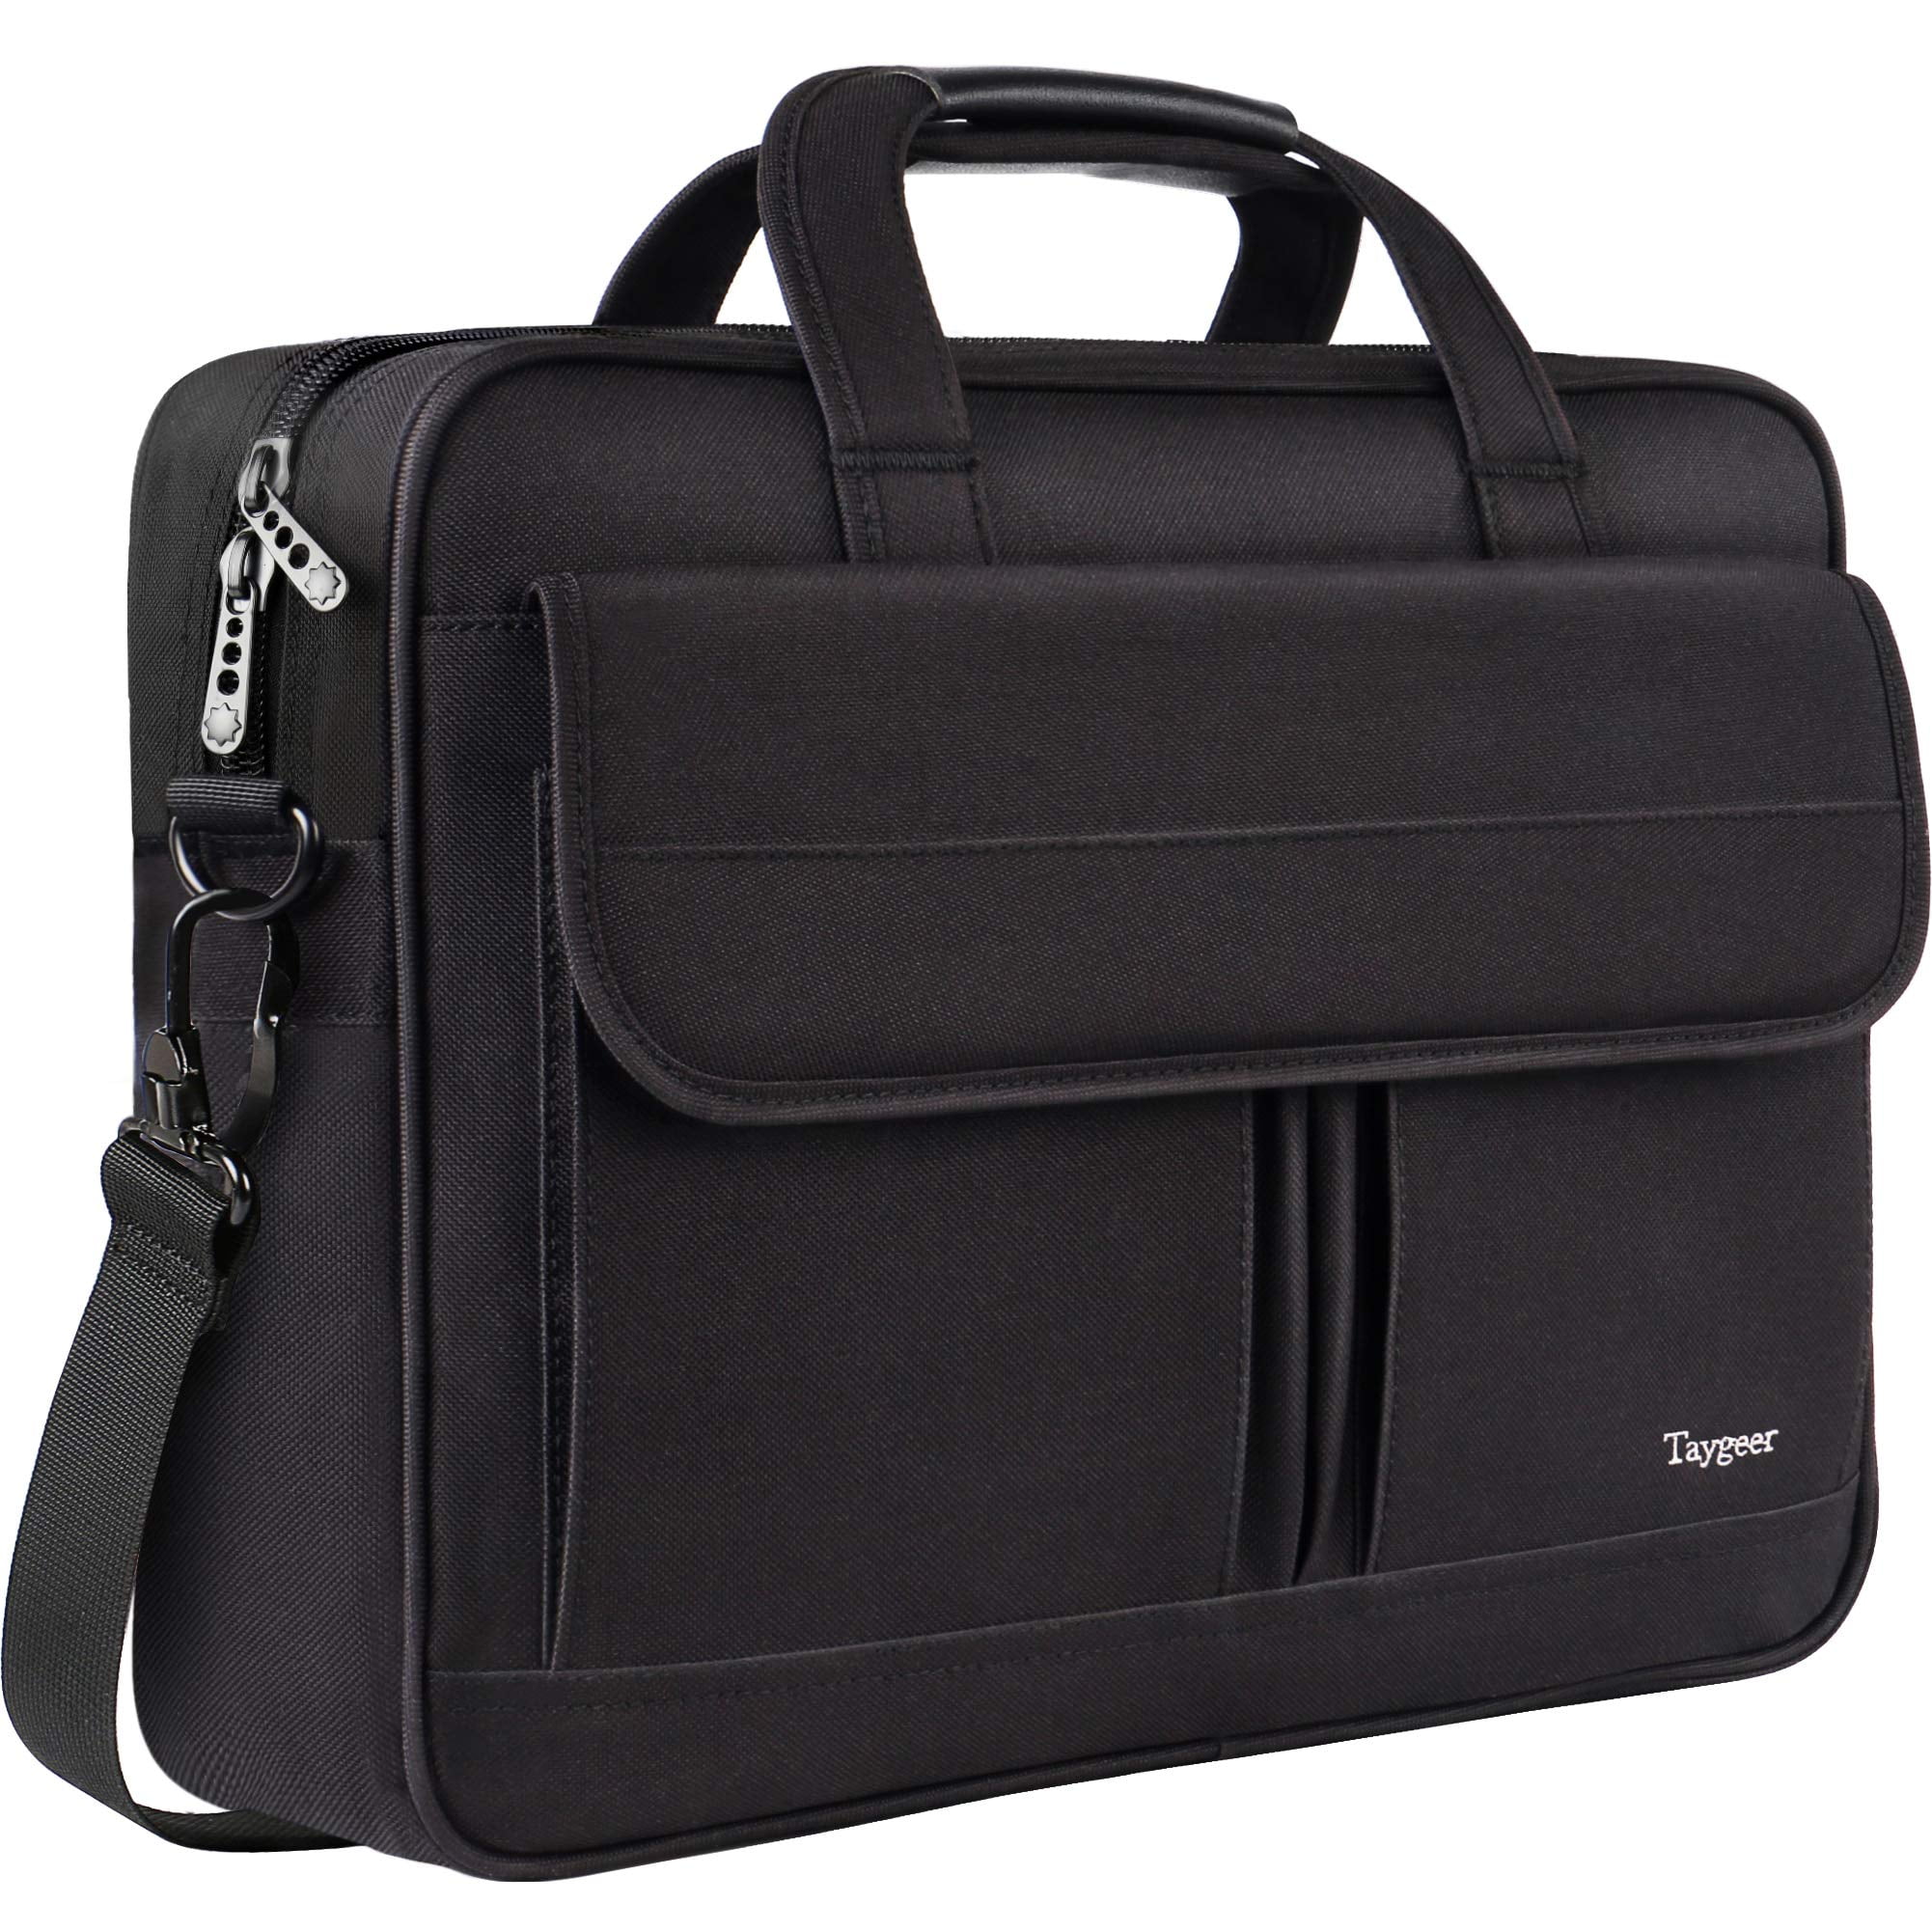 Business Men Shoulder Bags Large Capacity Black Laptop Handbag Pu Leather Man Briefcase Work Bag,Black